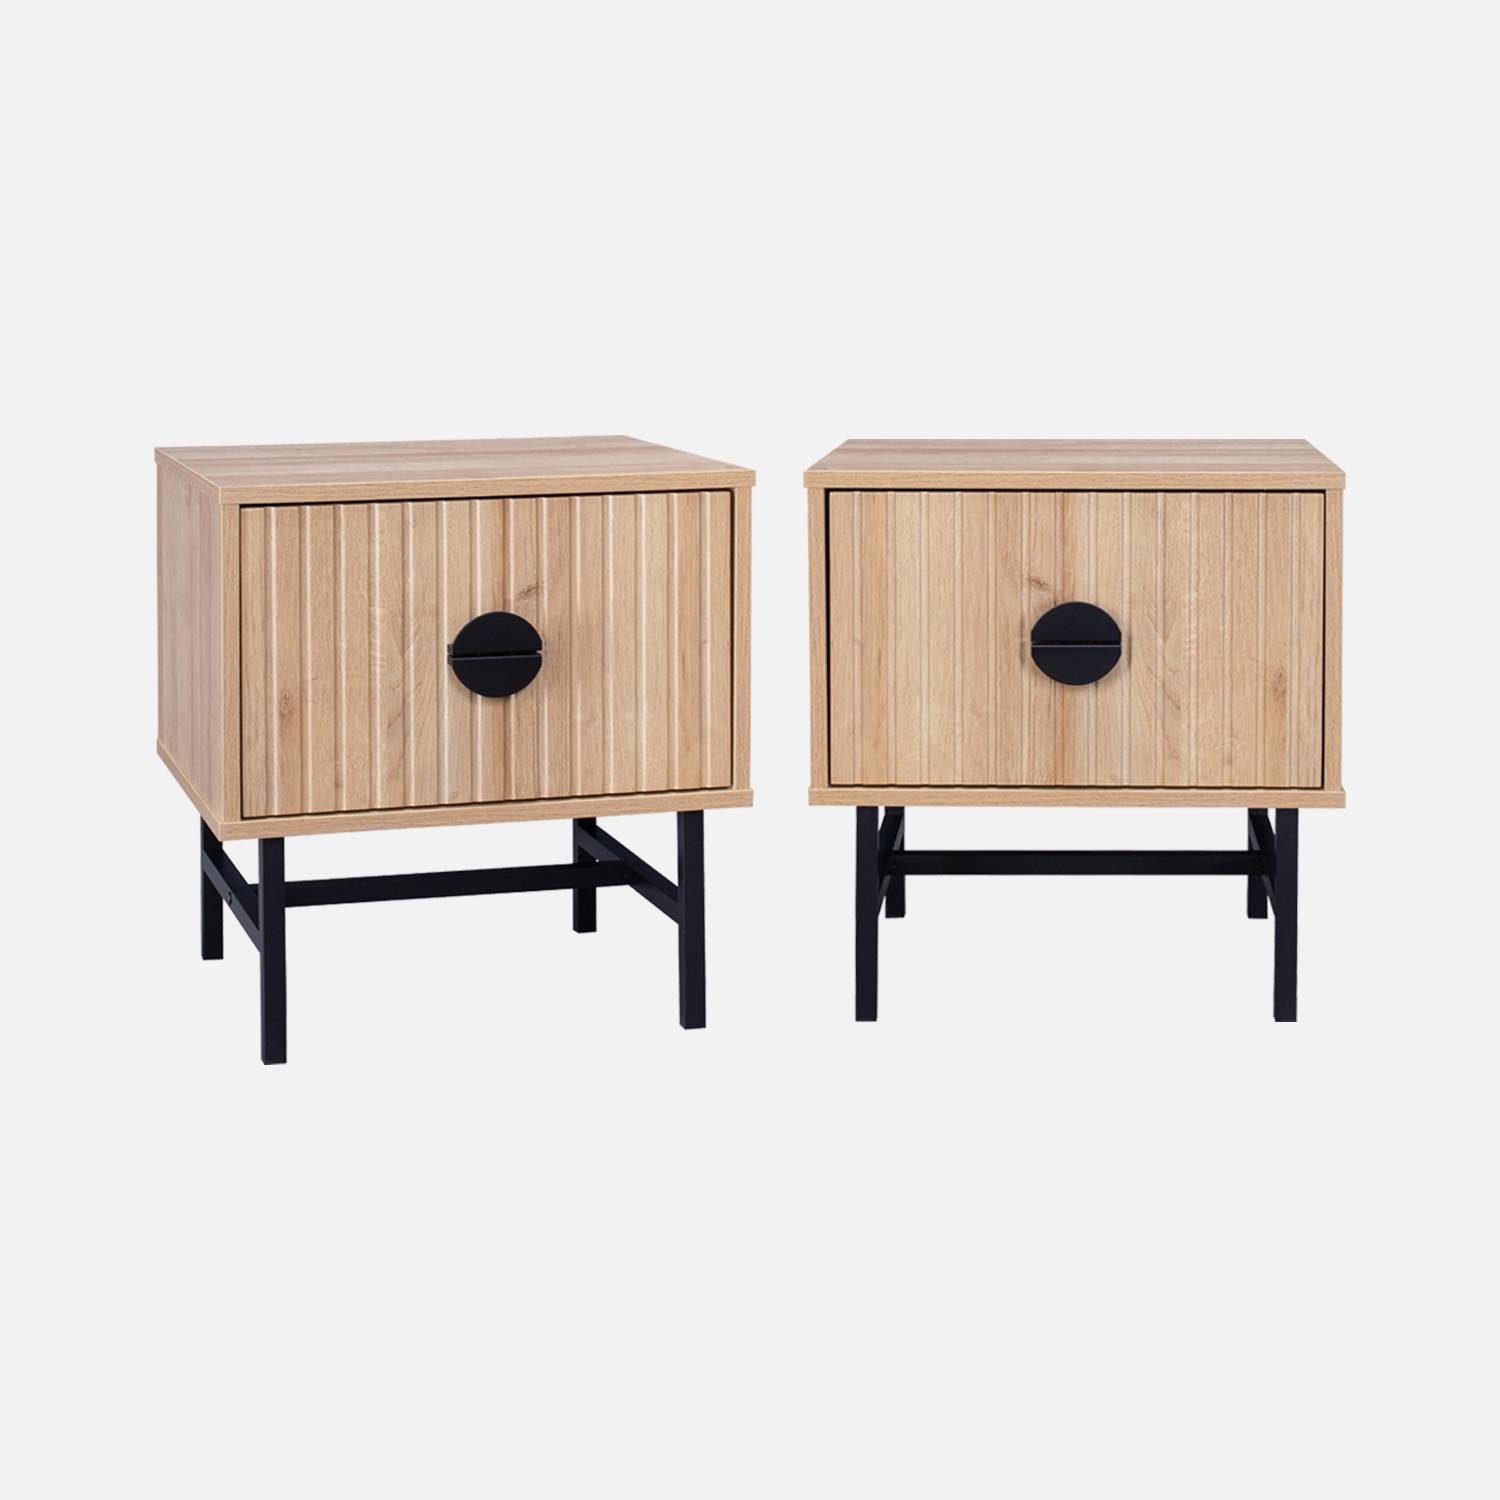 Set of 2 oak-effect bedside tables, 1 drawer| sweeek